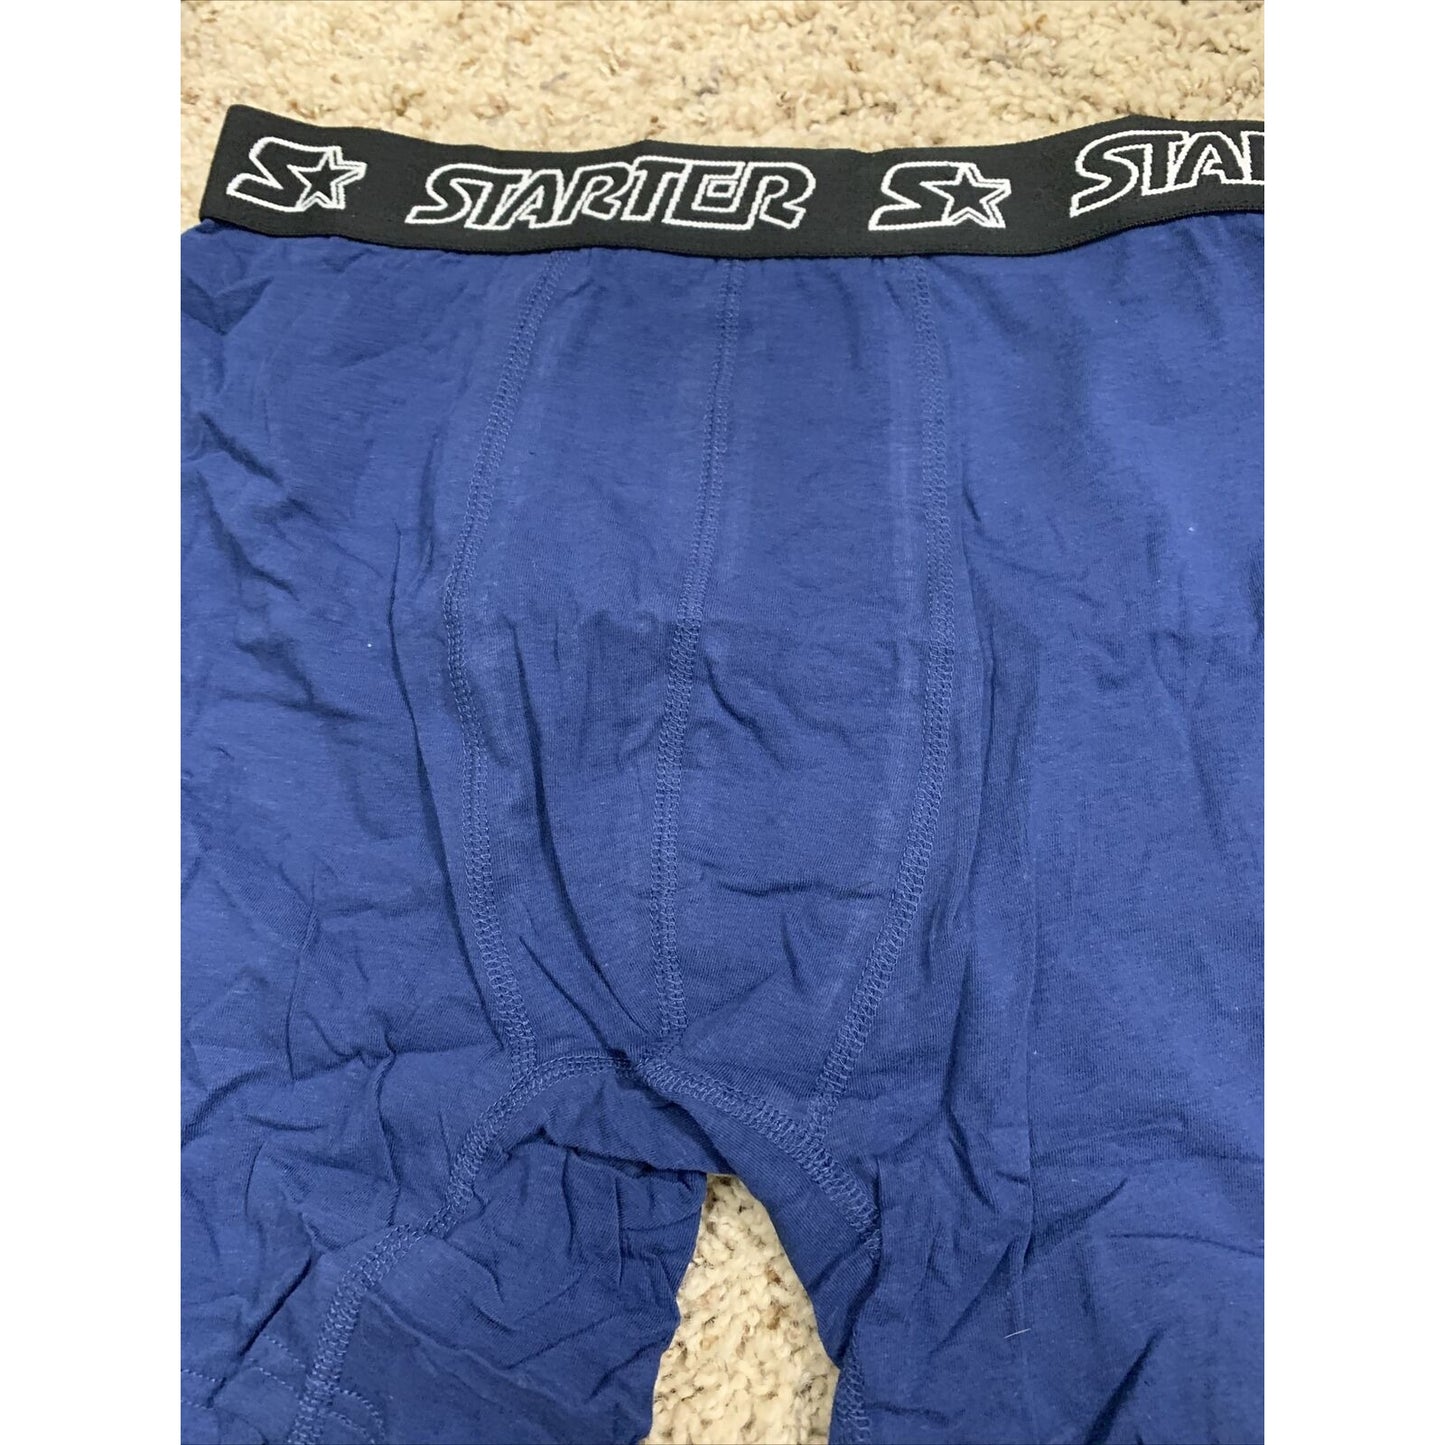 Blue Men’s Large Starter Black Label Compression Shorts 95% Cotton, 5% Spandex